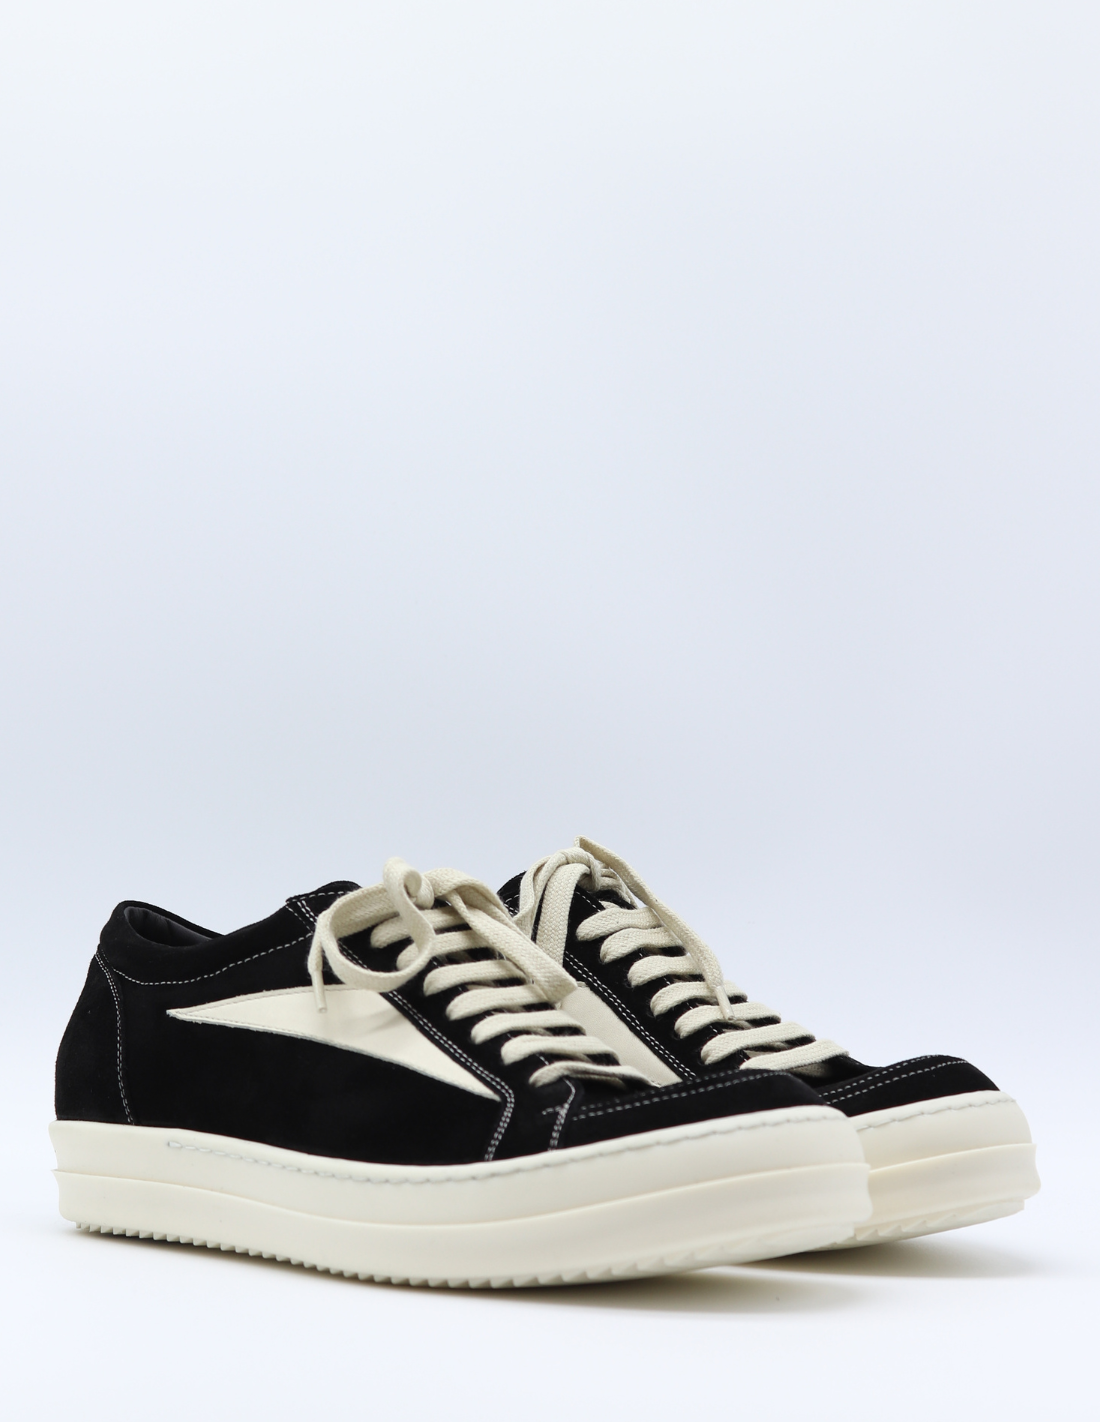 RICK OWENS "Vintage" two-tone low sneakers in suede - black